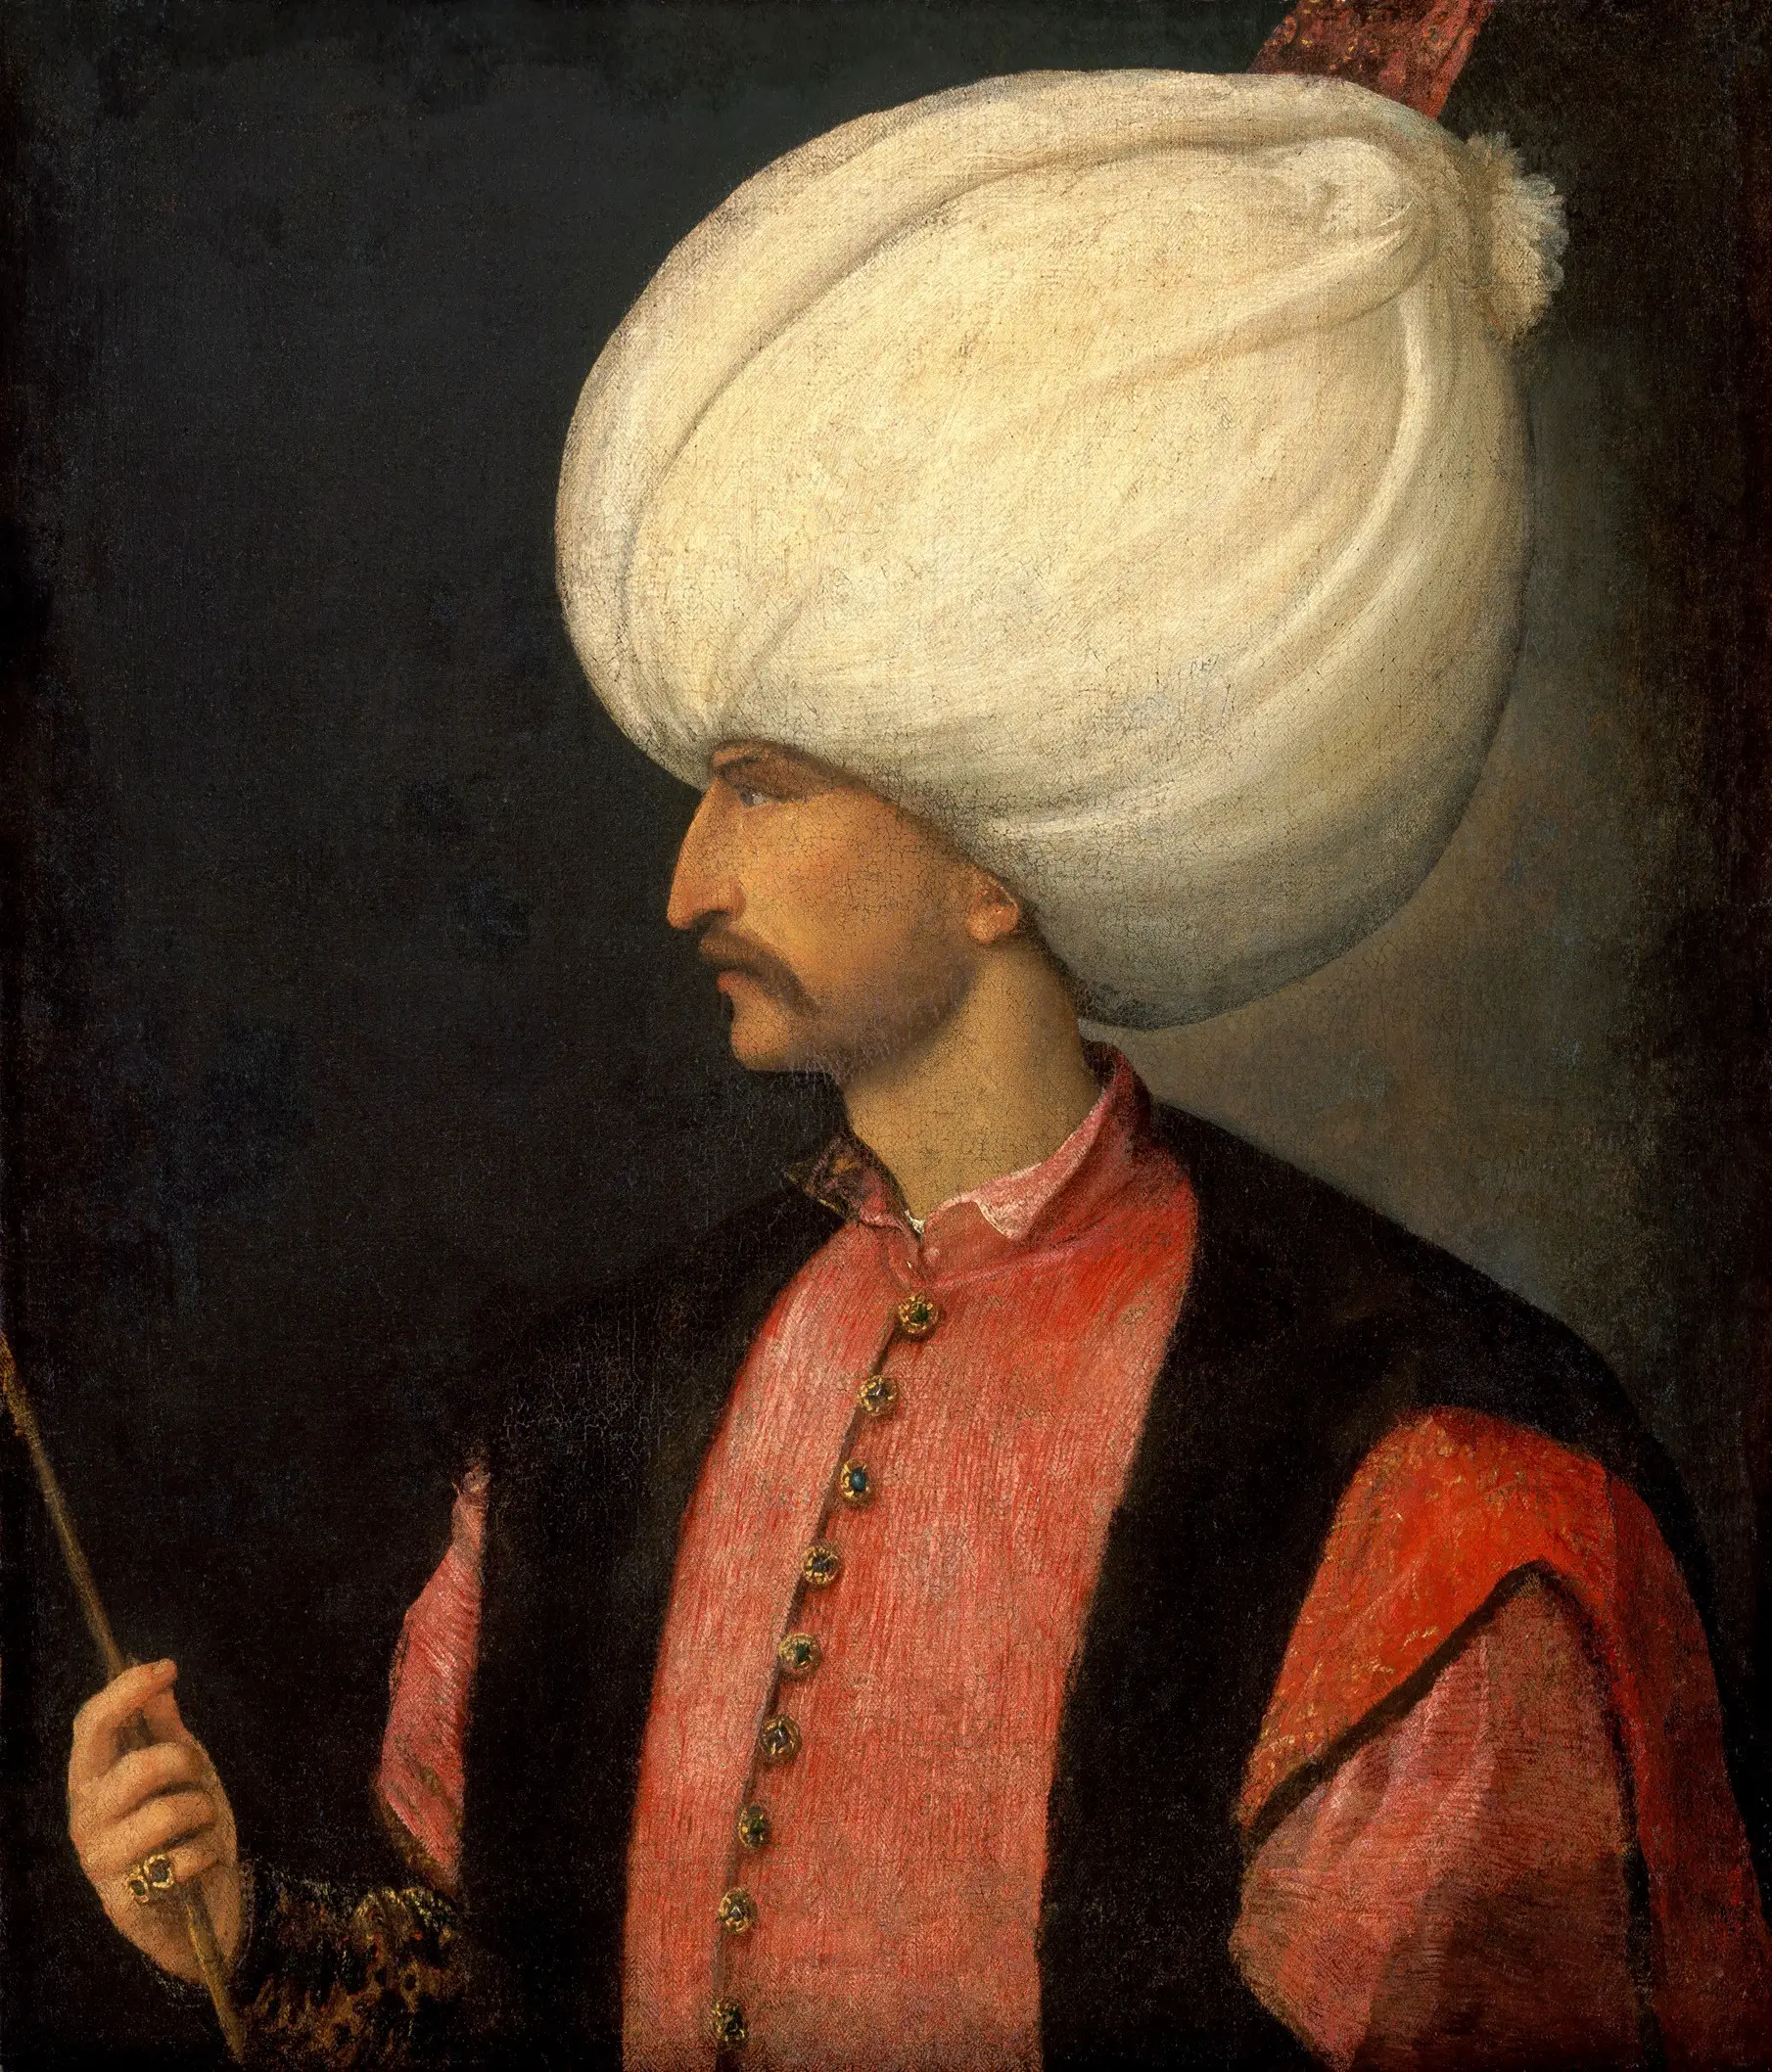 La historia de Solimán el Magnífico, uno de los sultanes más inteligentes que gobernó el Imperio Otomano